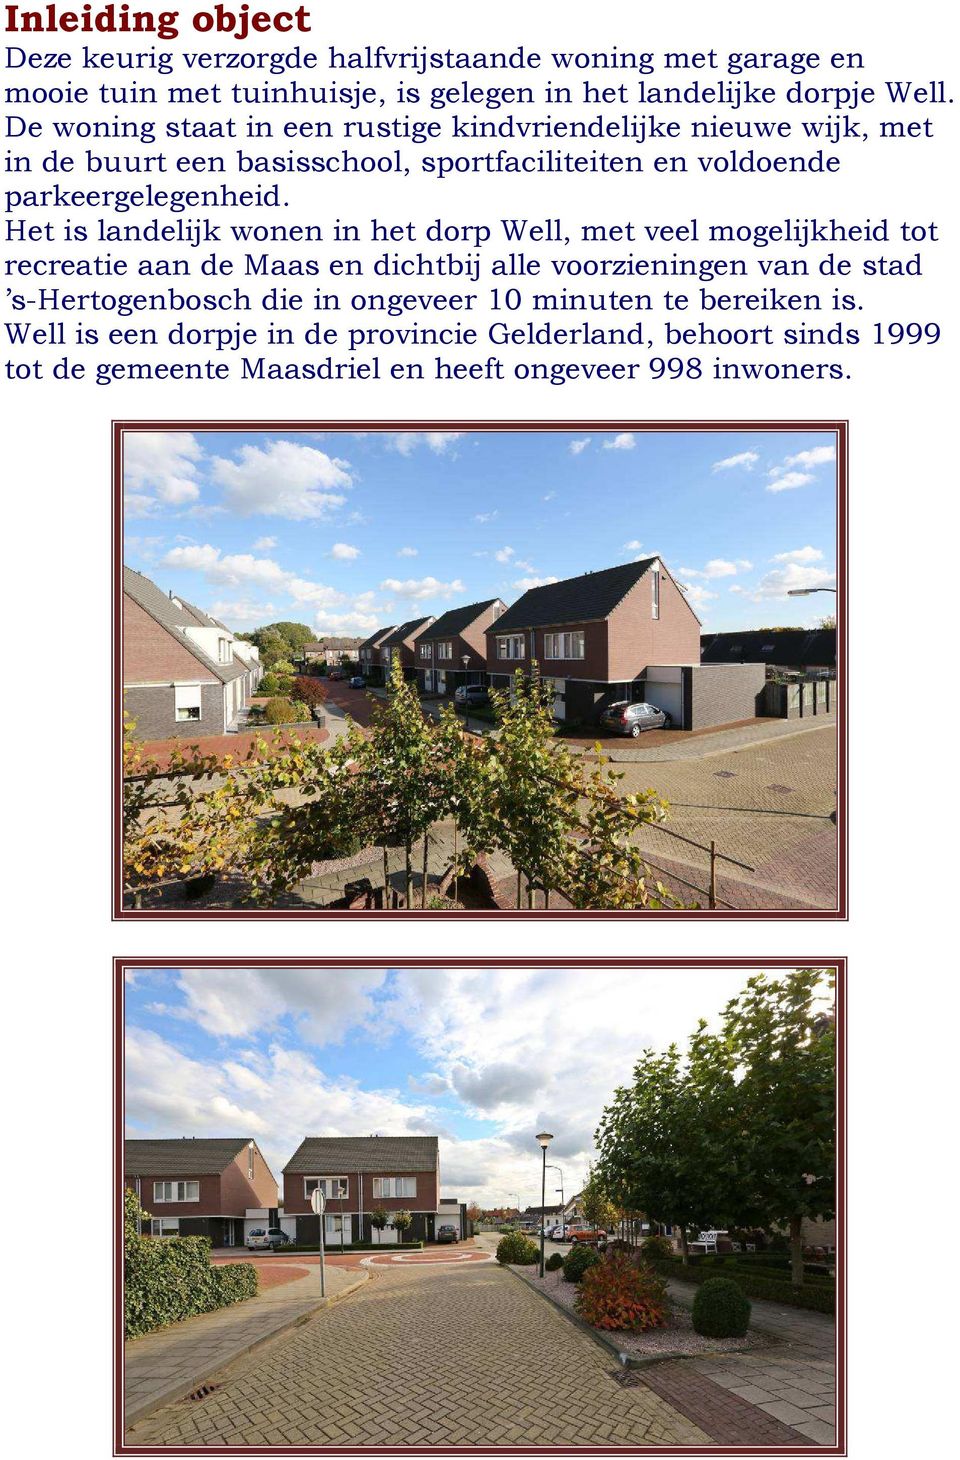 Het is landelijk wonen in het dorp Well, met veel mogelijkheid tot recreatie aan de Maas en dichtbij alle voorzieningen van de stad s-hertogenbosch